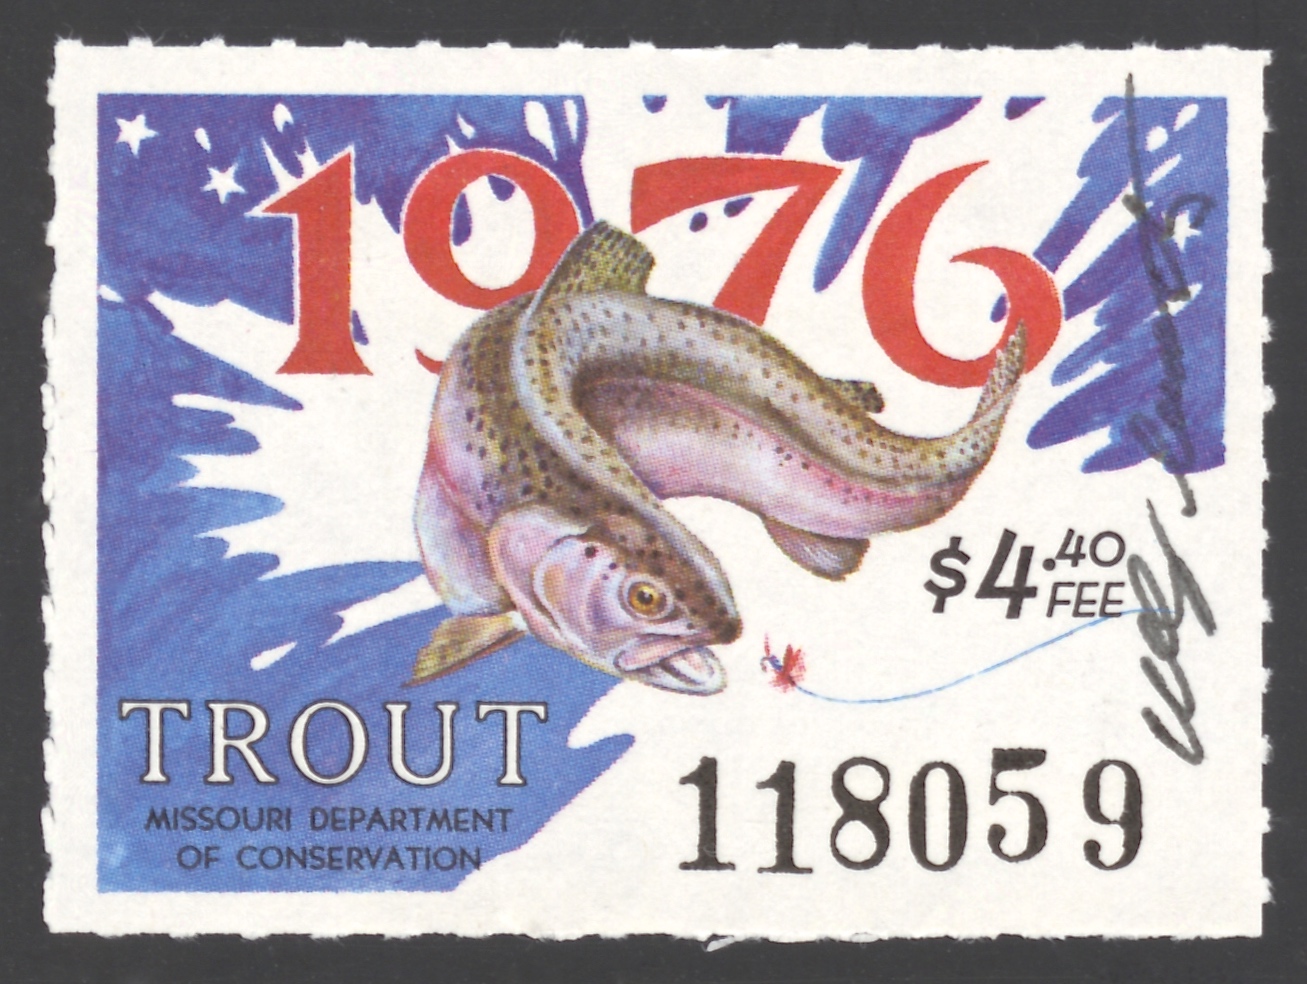 1976 Missouri Missouri Trout Stamp signed by Charles Schwartz